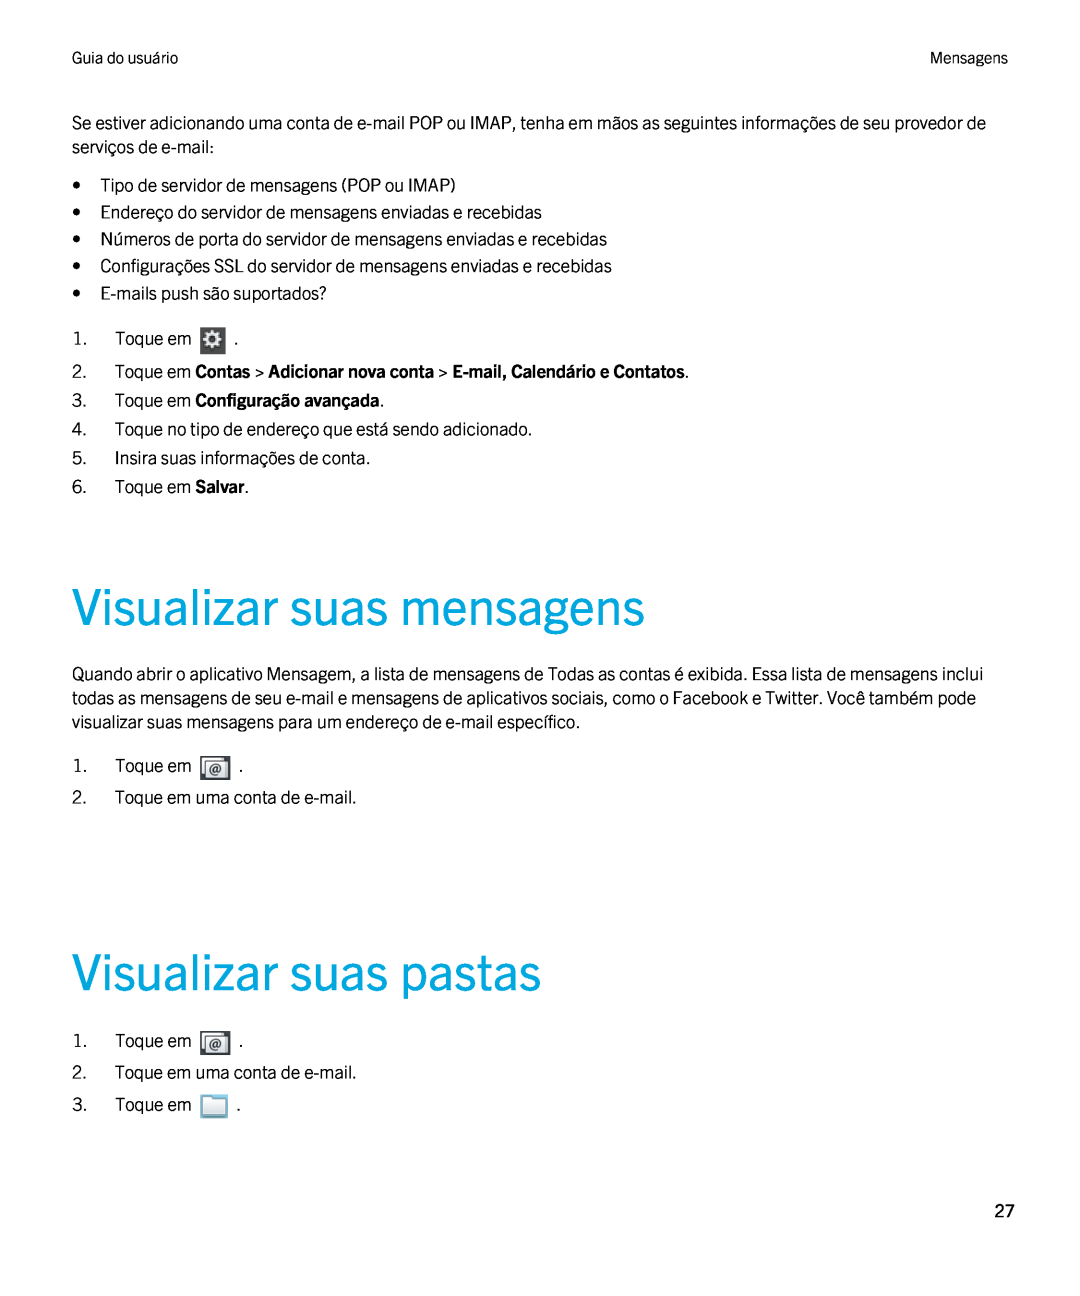 Blackberry 2.0.1 manual Visualizar suas mensagens, Visualizar suas pastas, Toque em Configuração avançada 